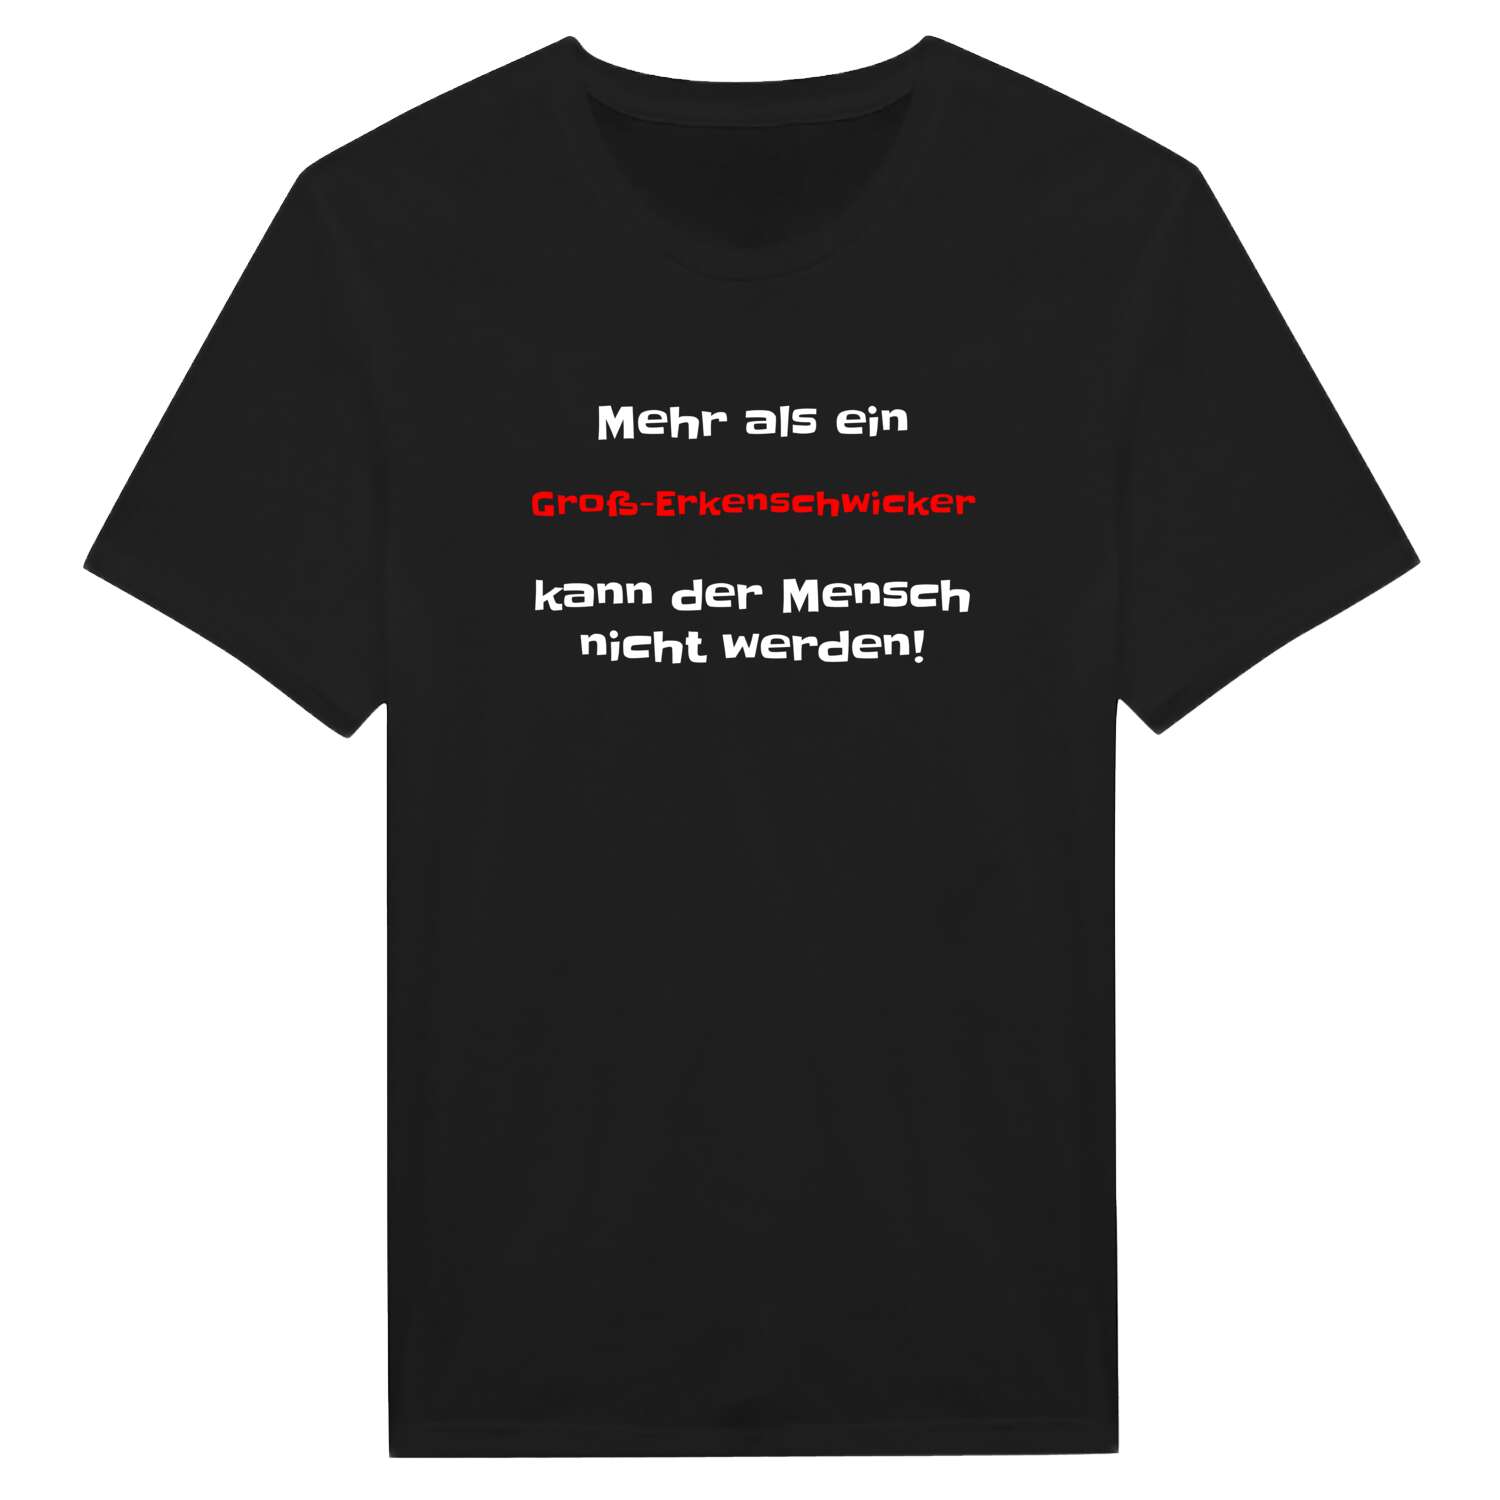 Groß-Erkenschwick T-Shirt »Mehr als ein«